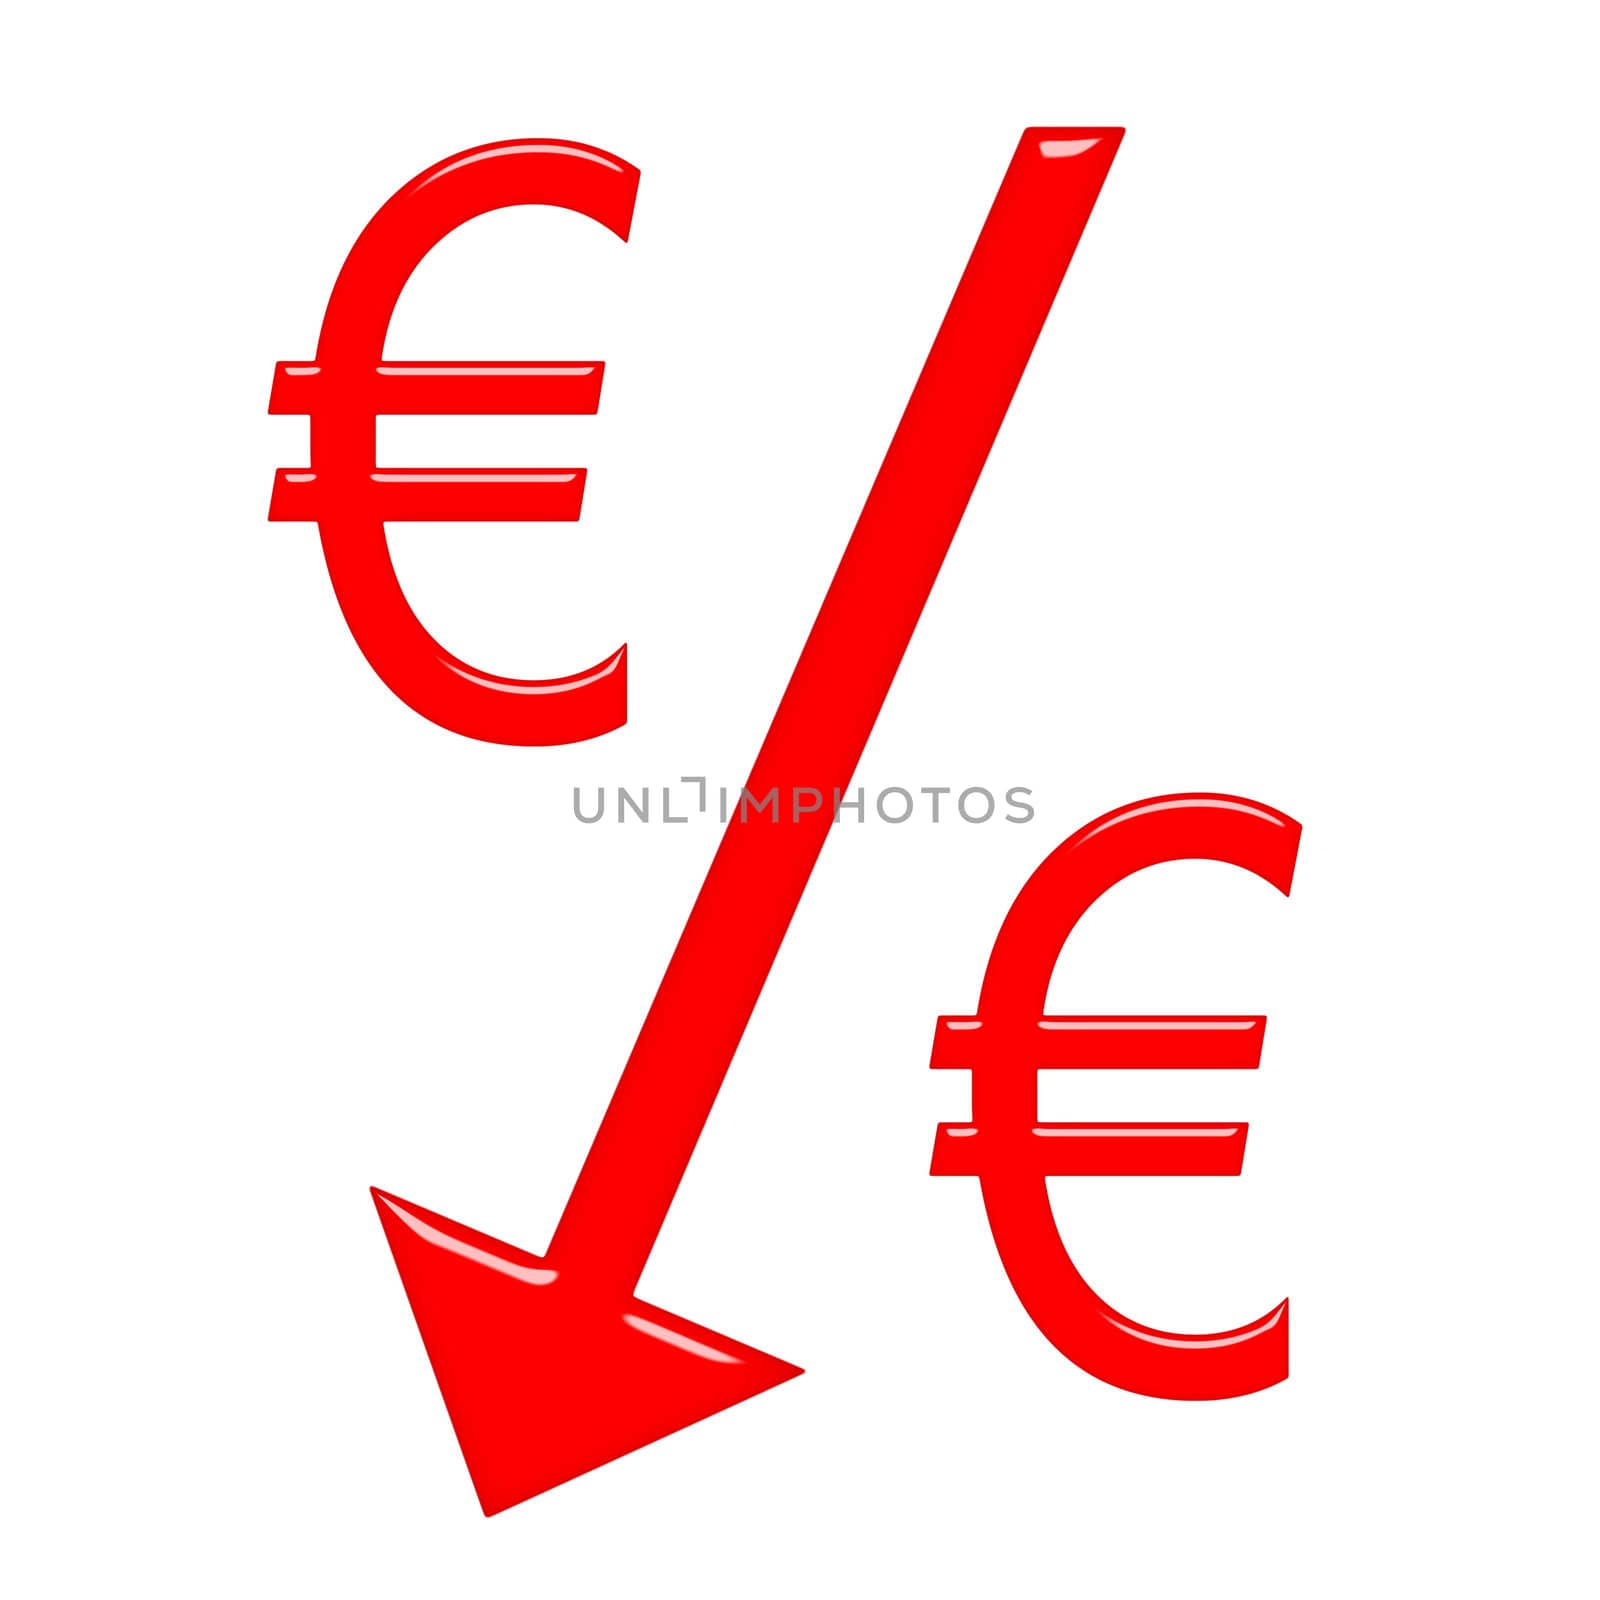 Falling Euro Currecny by Georgios